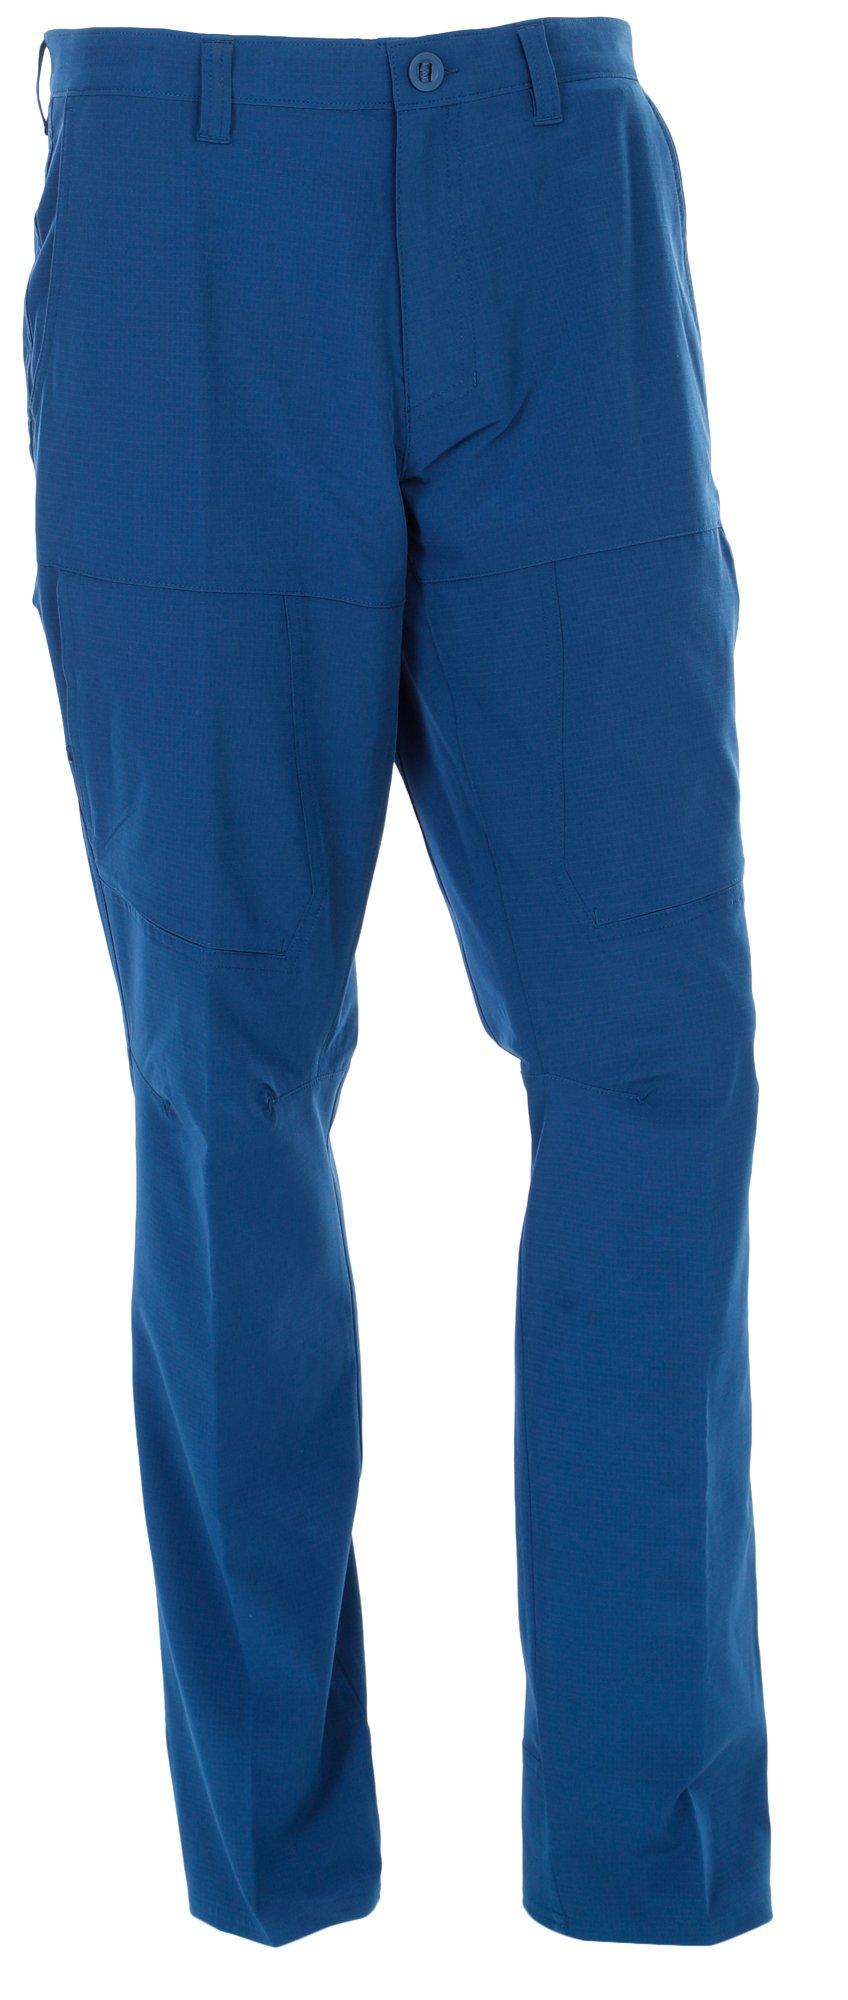 Men's Outdoor Hybrid Pants